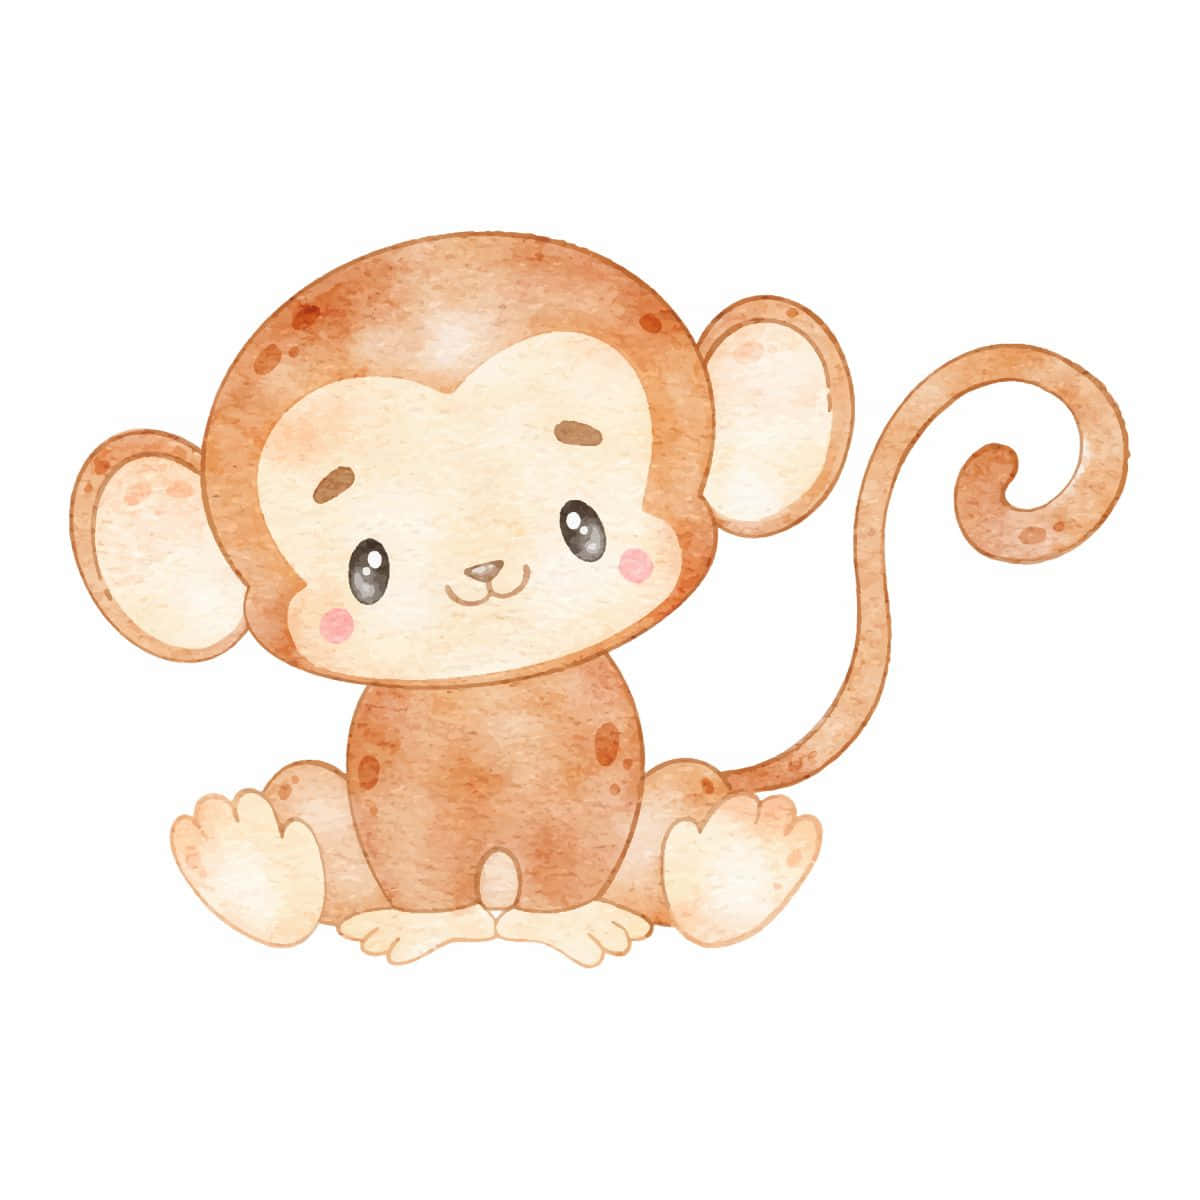 ¡ay,mira Qué Mono Tan Lindo Es Ese Pequeño Mono!